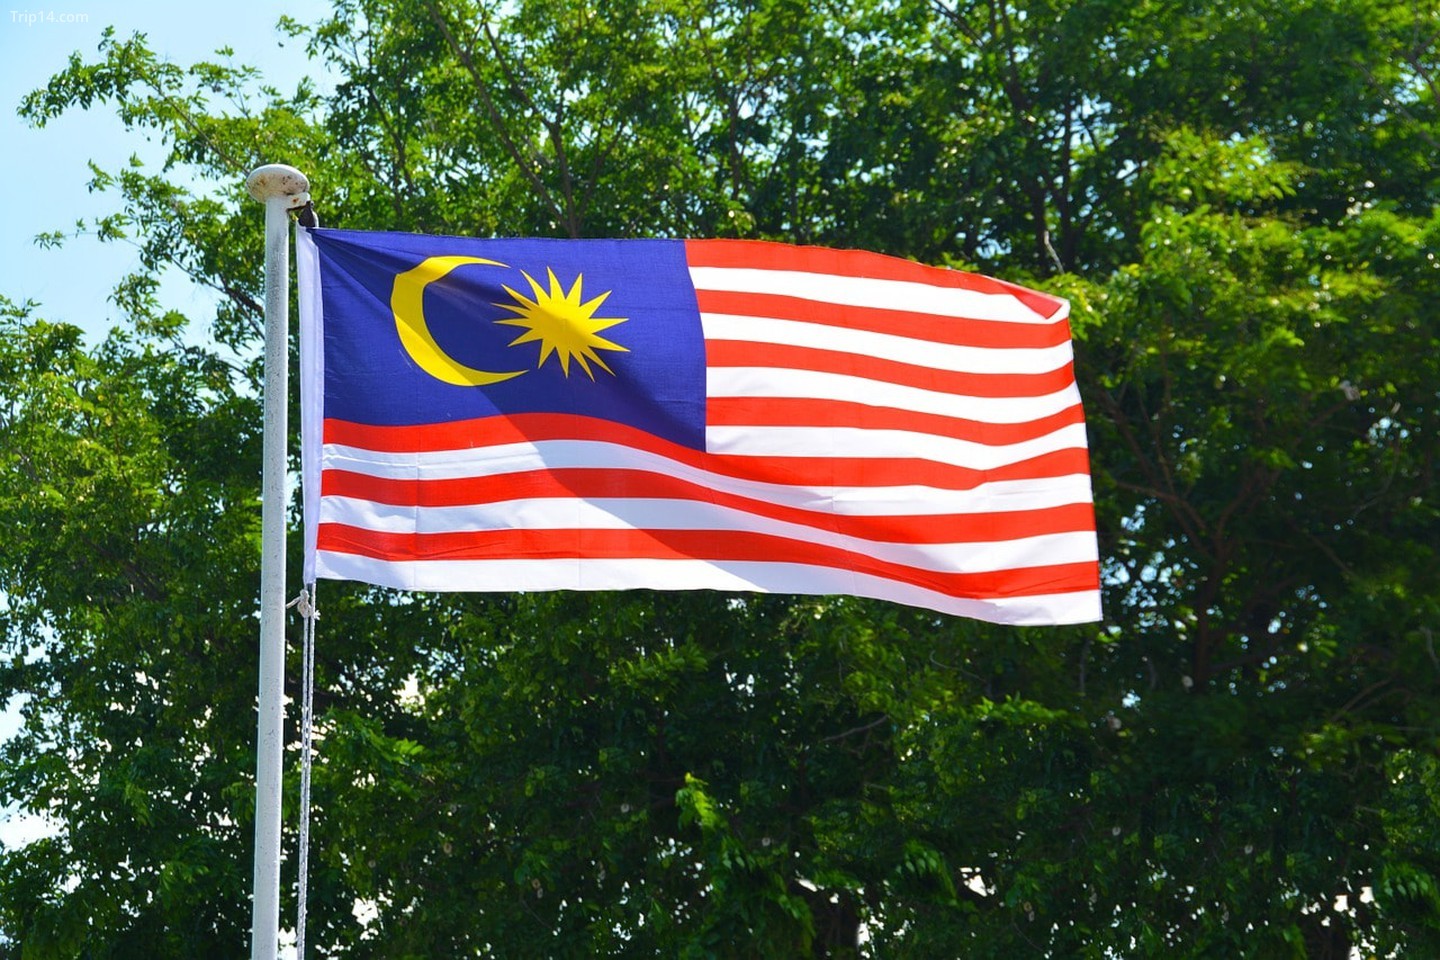 Quốc kỳ Malaysia: Năm 2024, quốc kỳ Malaysia vẫn là biểu tượng văn hóa đặc trưng của đất nước này. Mỗi khi nhìn vào cờ Malaysia, du khách có thể cảm nhận được sự đoàn kết và tình yêu quê hương của người dân nơi đây. Hãy cùng khám phá và tìm hiểu thêm về quốc kỳ Malaysia qua hình ảnh đầy màu sắc và ý nghĩa sâu sắc.